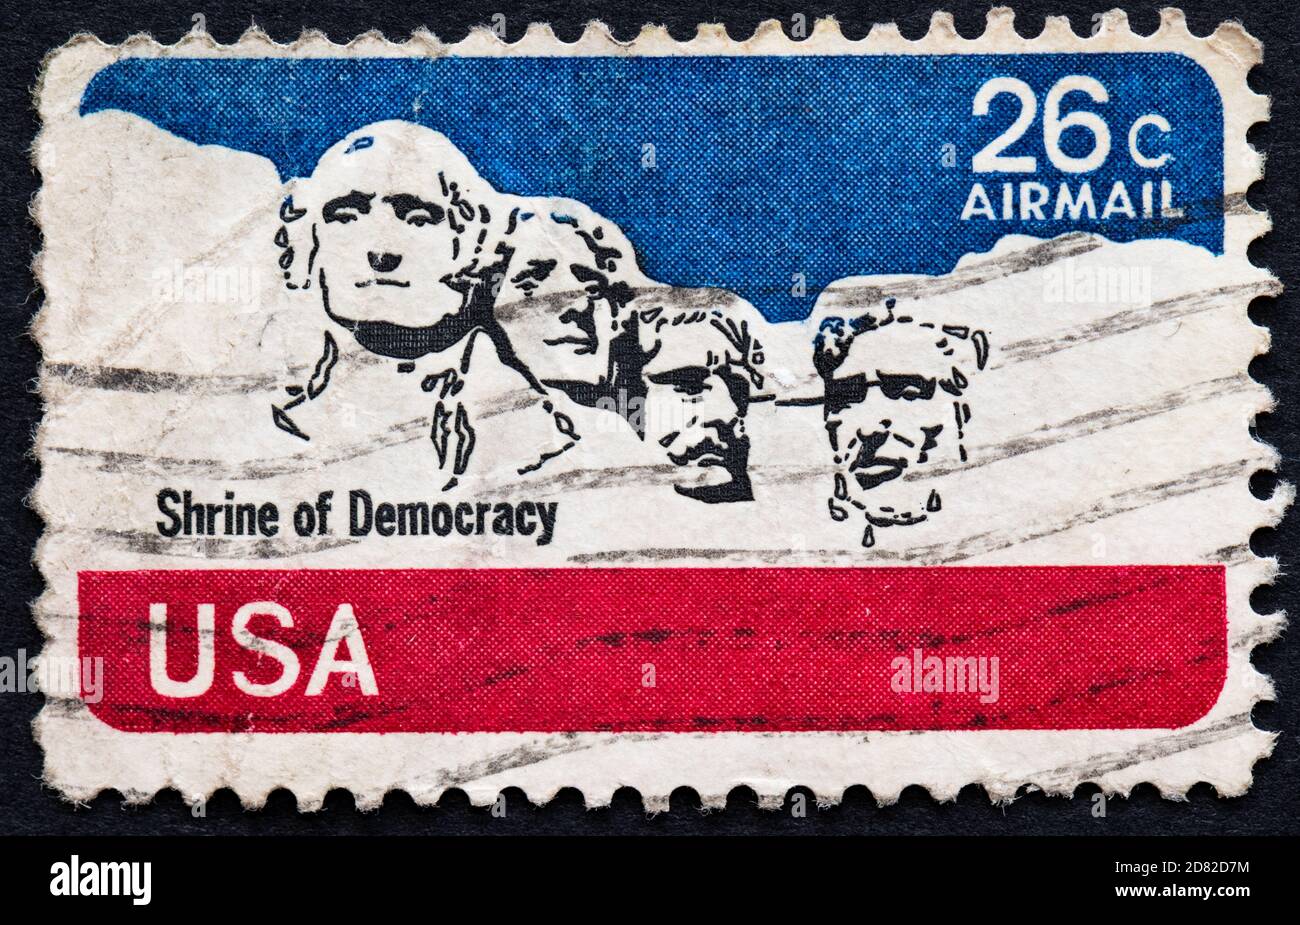 Mount Rushmore National Memorial timbre-poste 26c émis en 1974 ÉTATS-UNIS Banque D'Images